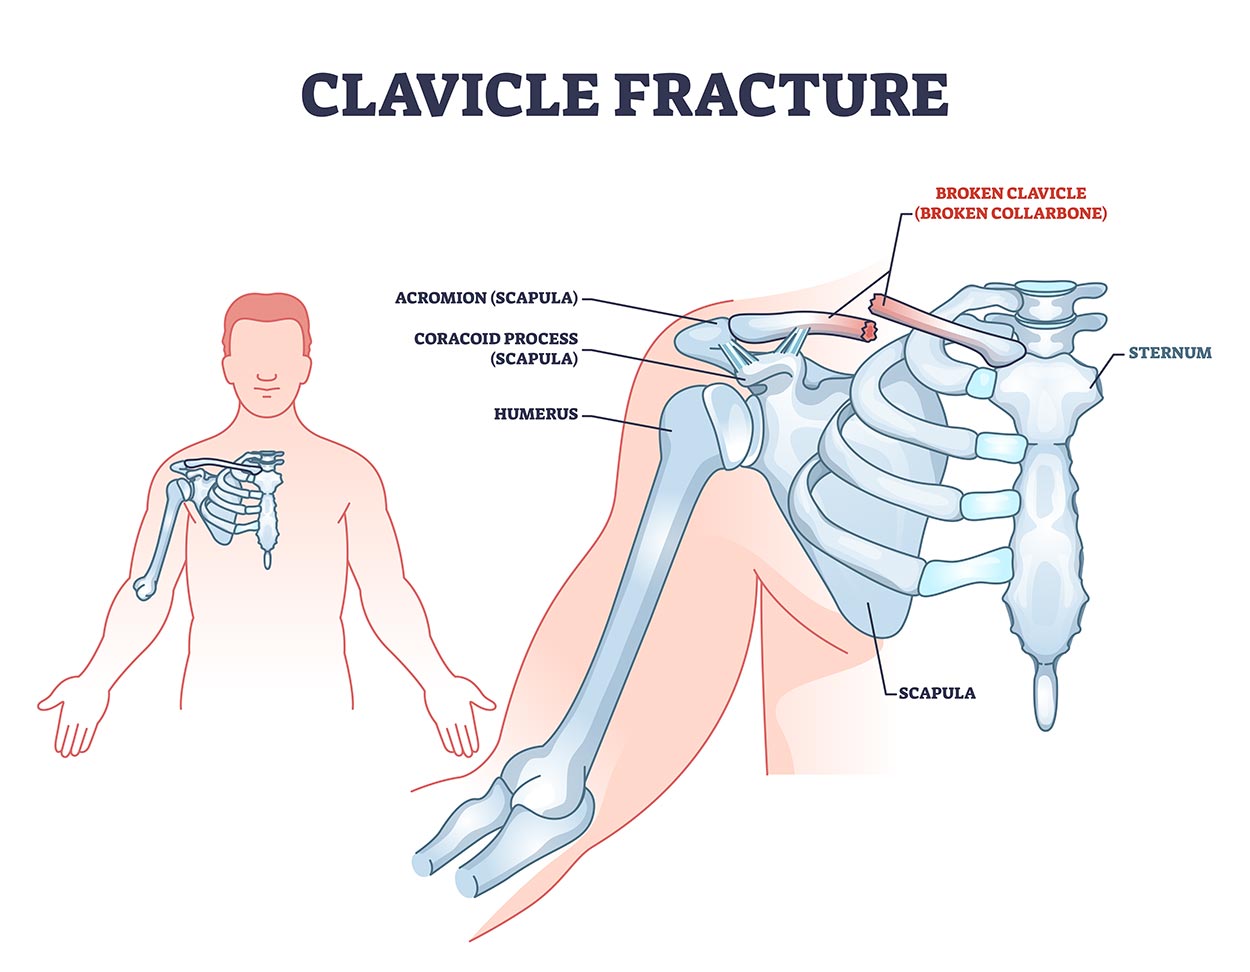 cemtro causas fracturas clavicula